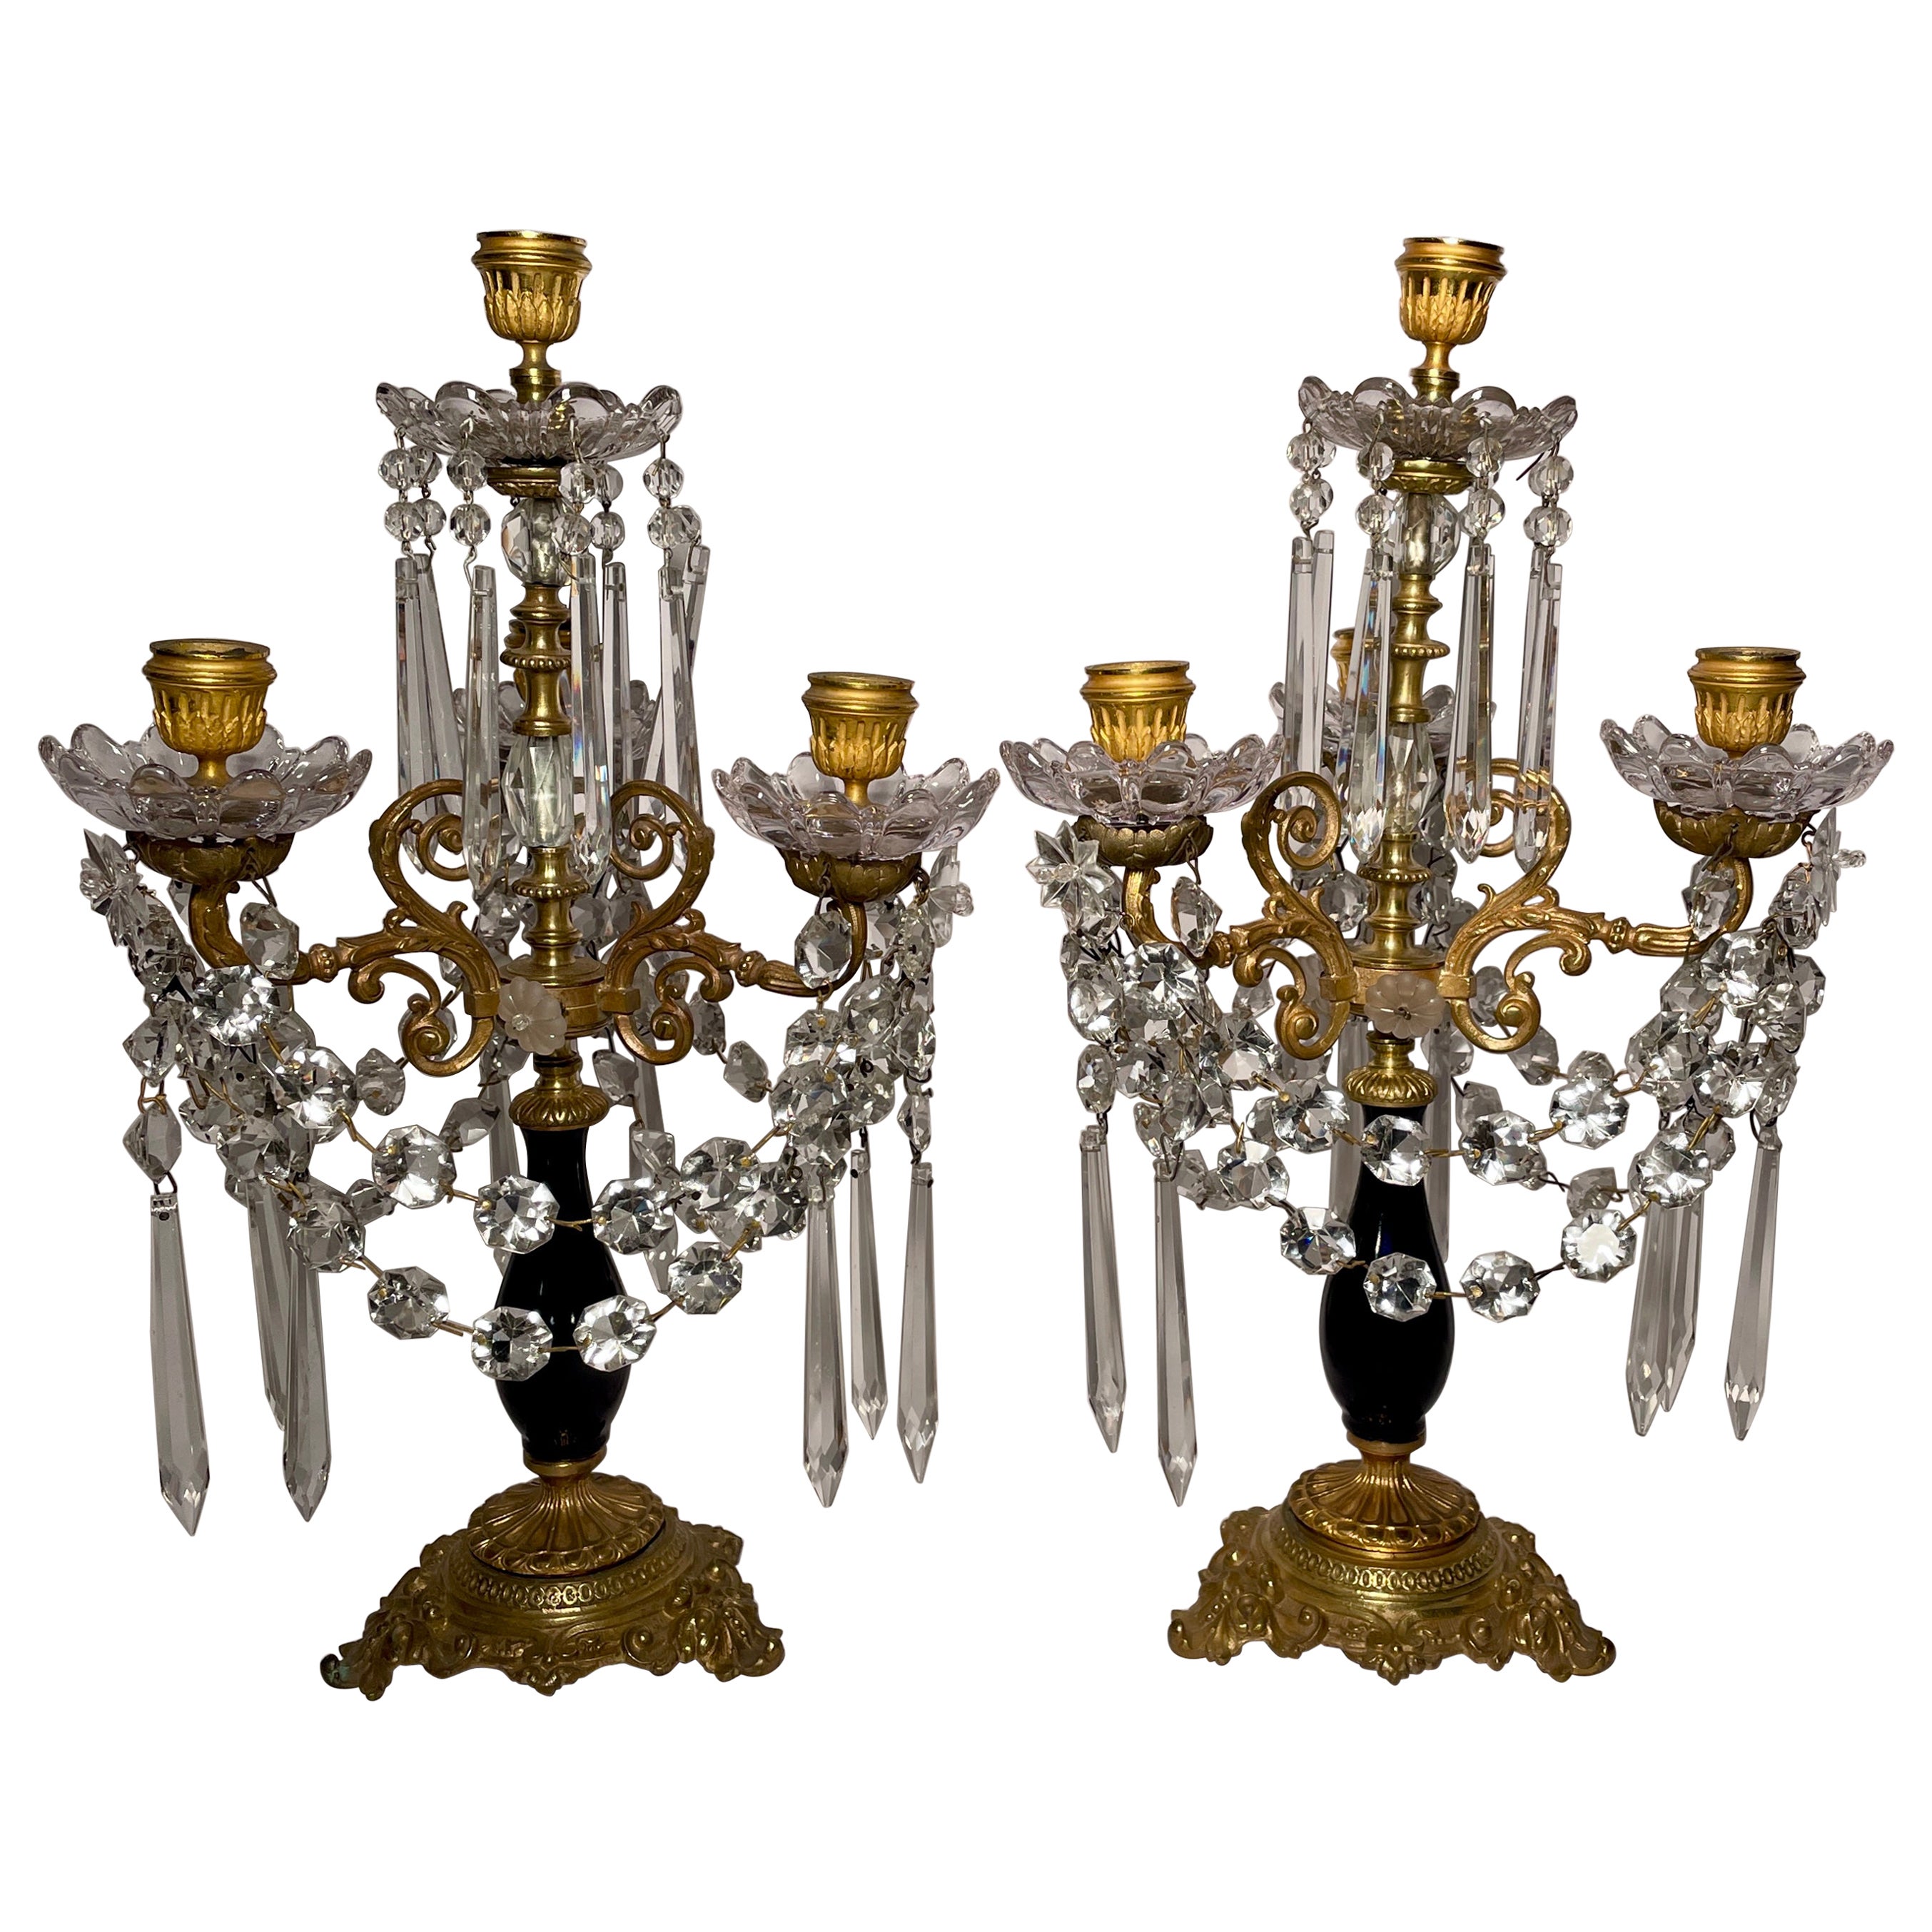 Paire de candélabres français anciens en bronze doré, cristal taillé et cobalt, vers les années 1880.